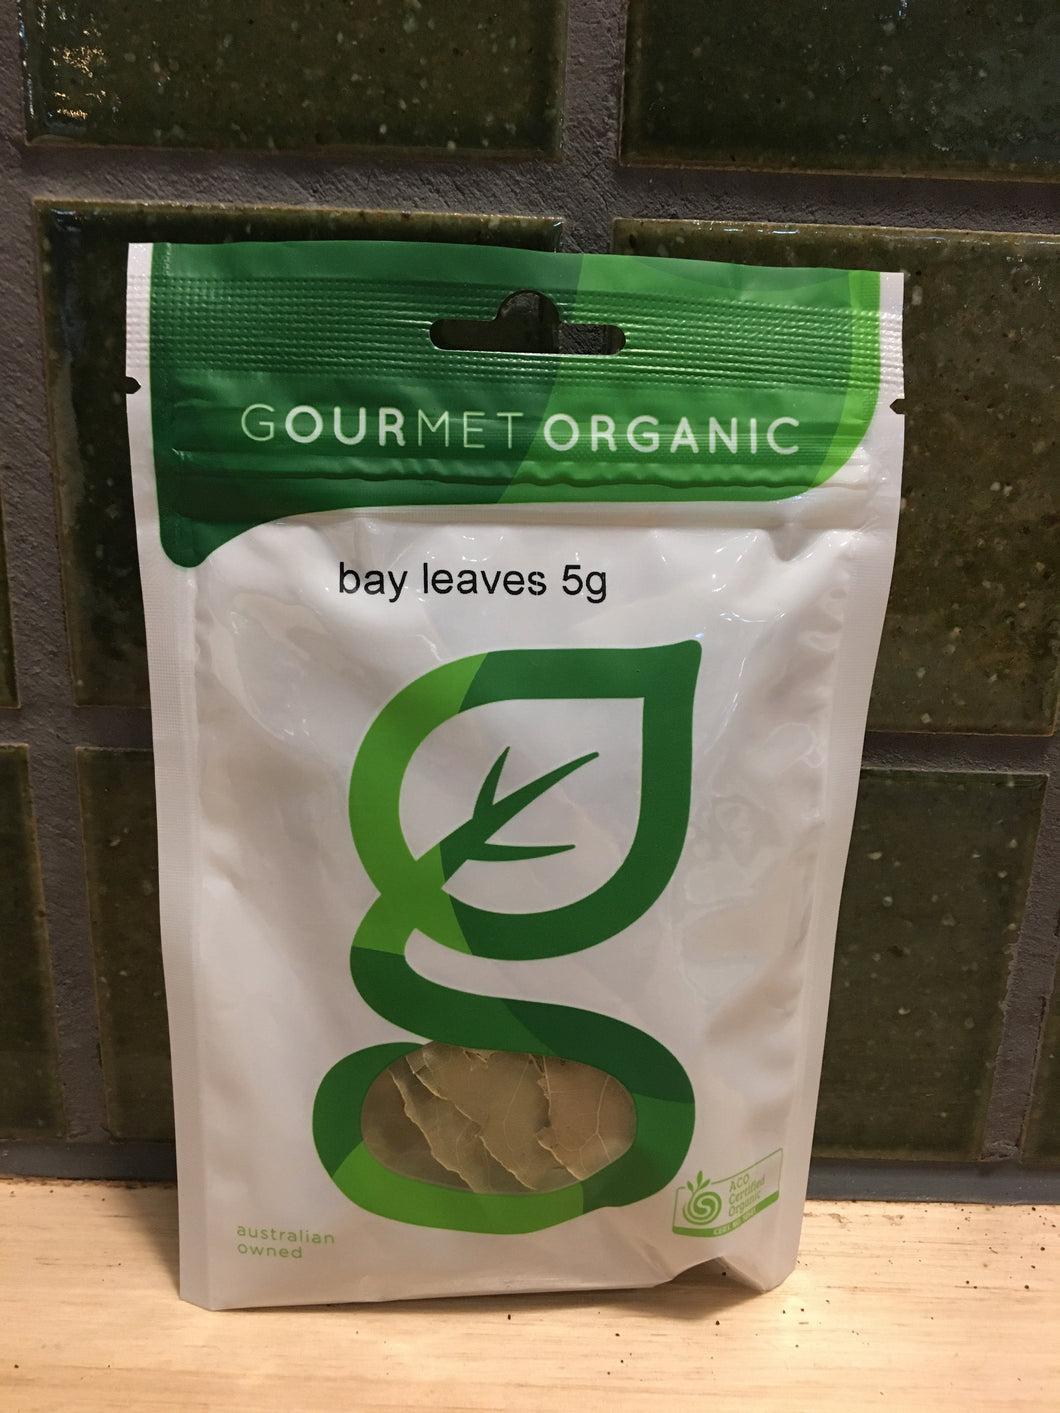 Gourmet Organic Herbs Bay Leaves 5g